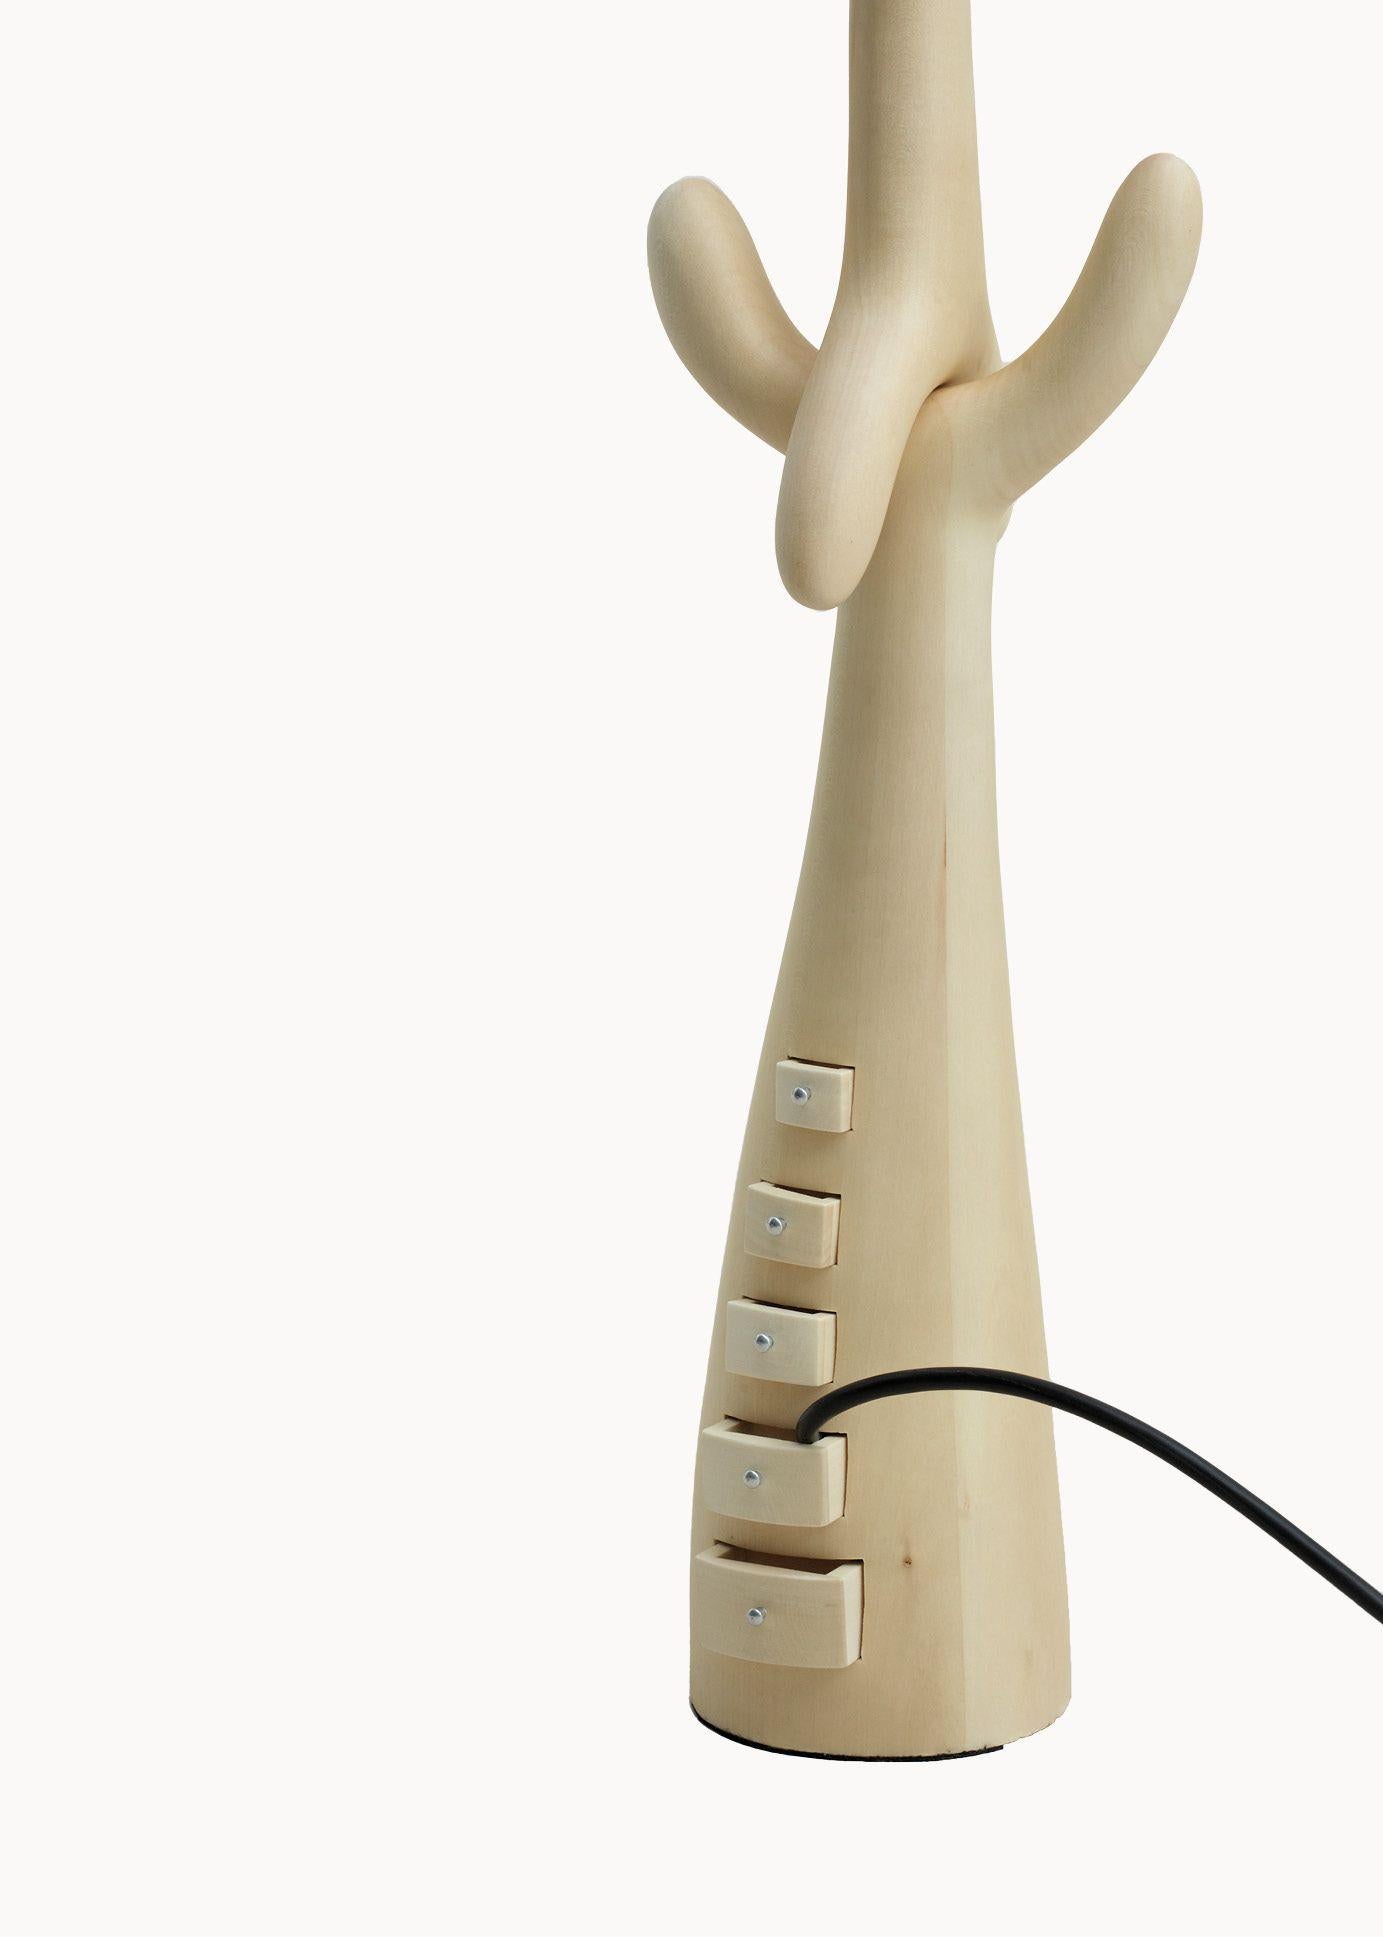 Schubladenlampe, entworfen von Dali, hergestellt von BD.

Geschnitzte Struktur aus hellem, lackiertem Lindenholz.
Lampenschirm aus beigem Leinen.

Maße: 30 x 30 x 87 H cm

Skulptur-Lampe-Schubladen

Eine Stehlampe nach den Zeichnungen Dalís für Jean